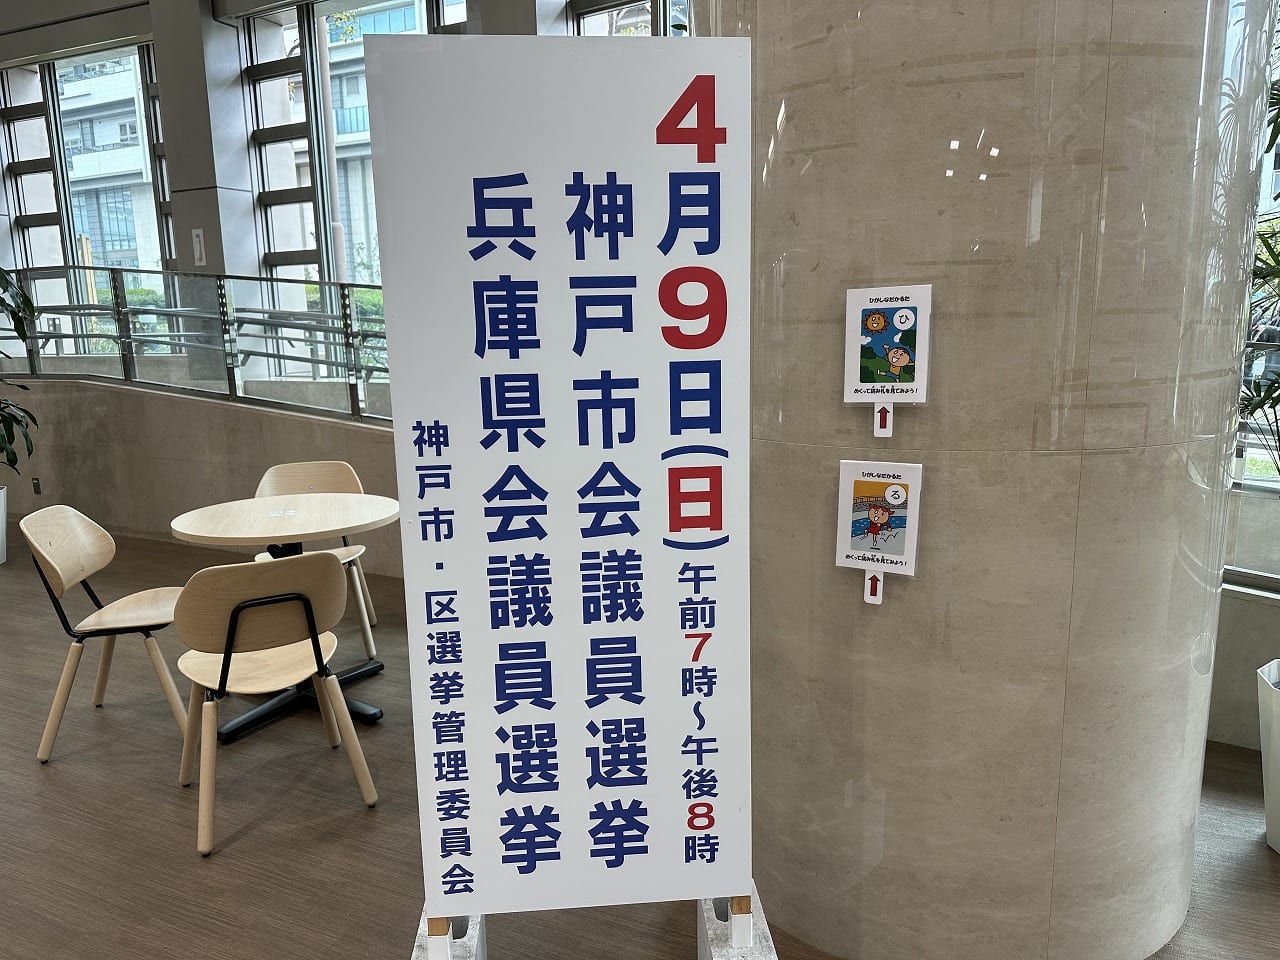 4月9日神戸市・兵庫県議会議員選挙